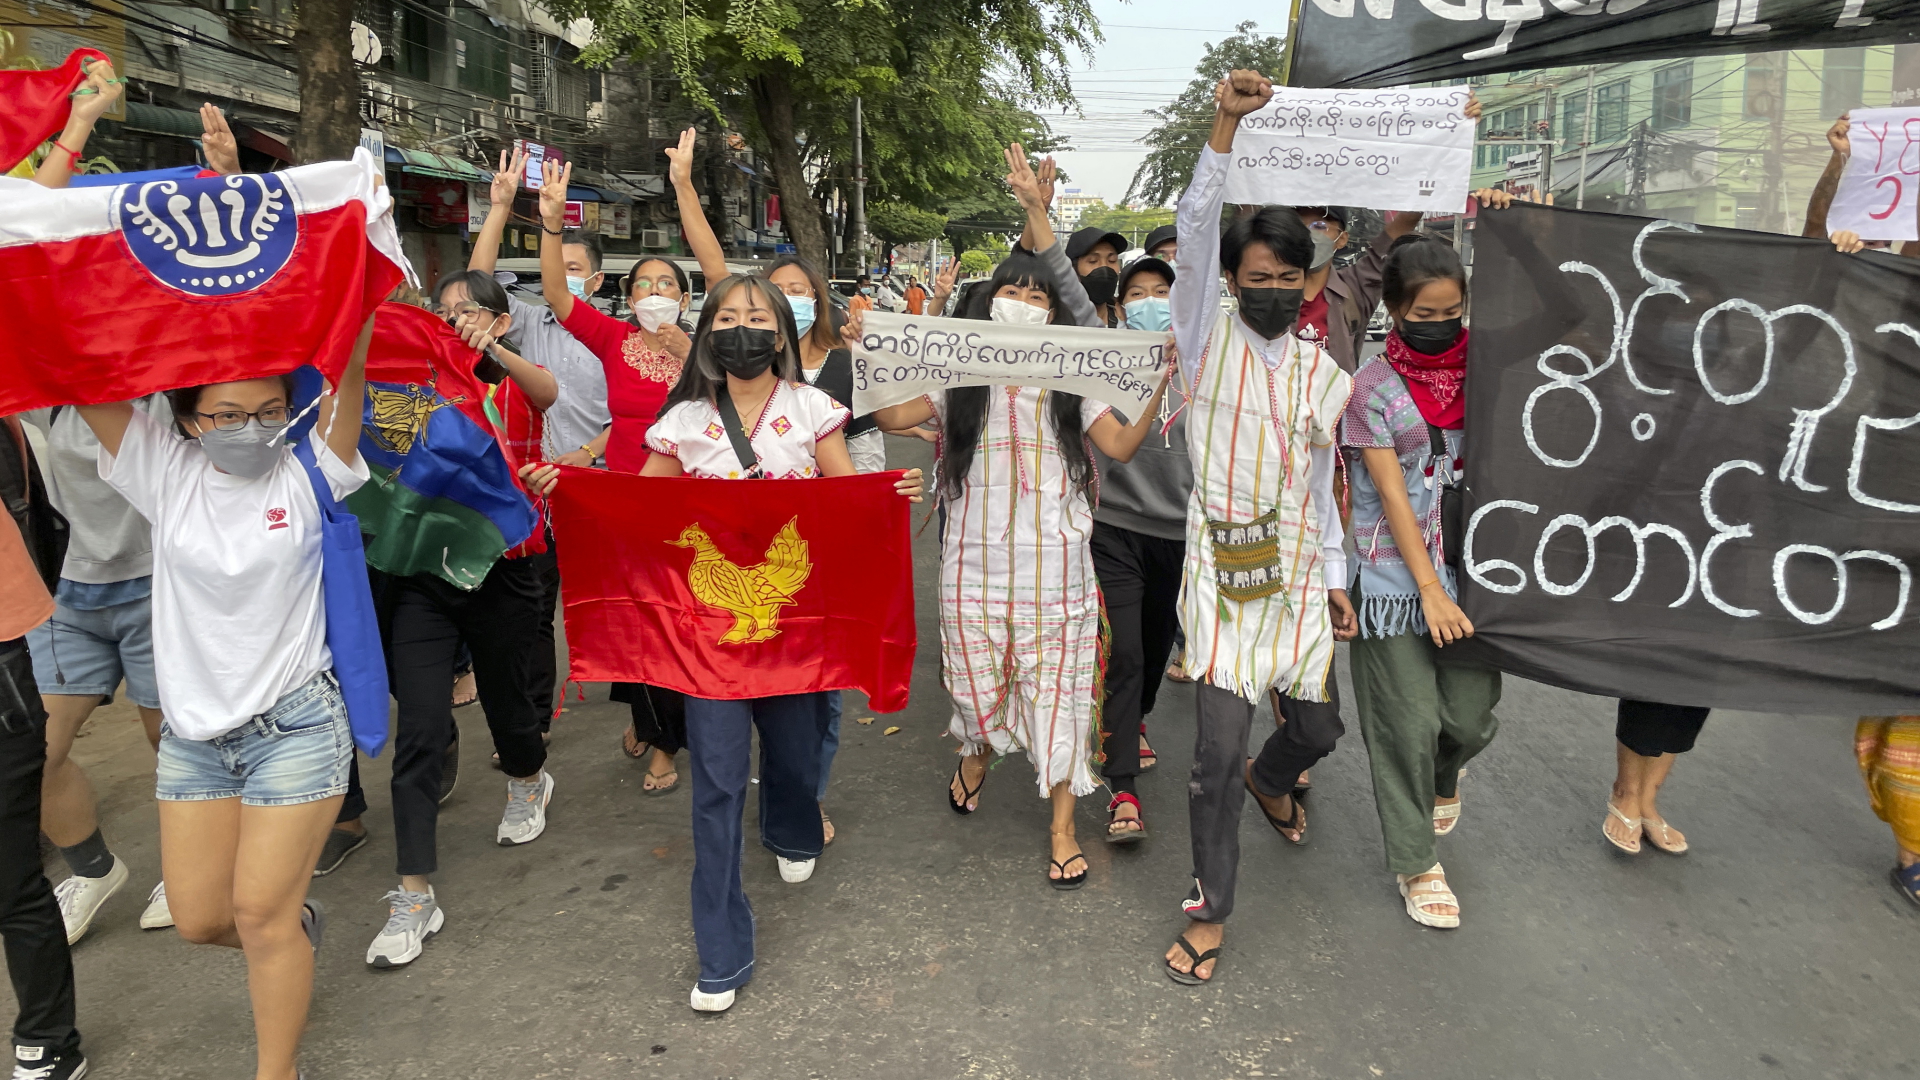 Demokratie-Befürworter halten eine Flashmob-Kundgebung ab, um gegen die vom Militär eingesetzte Regierung zu protestieren (Archivbild).  | dpa